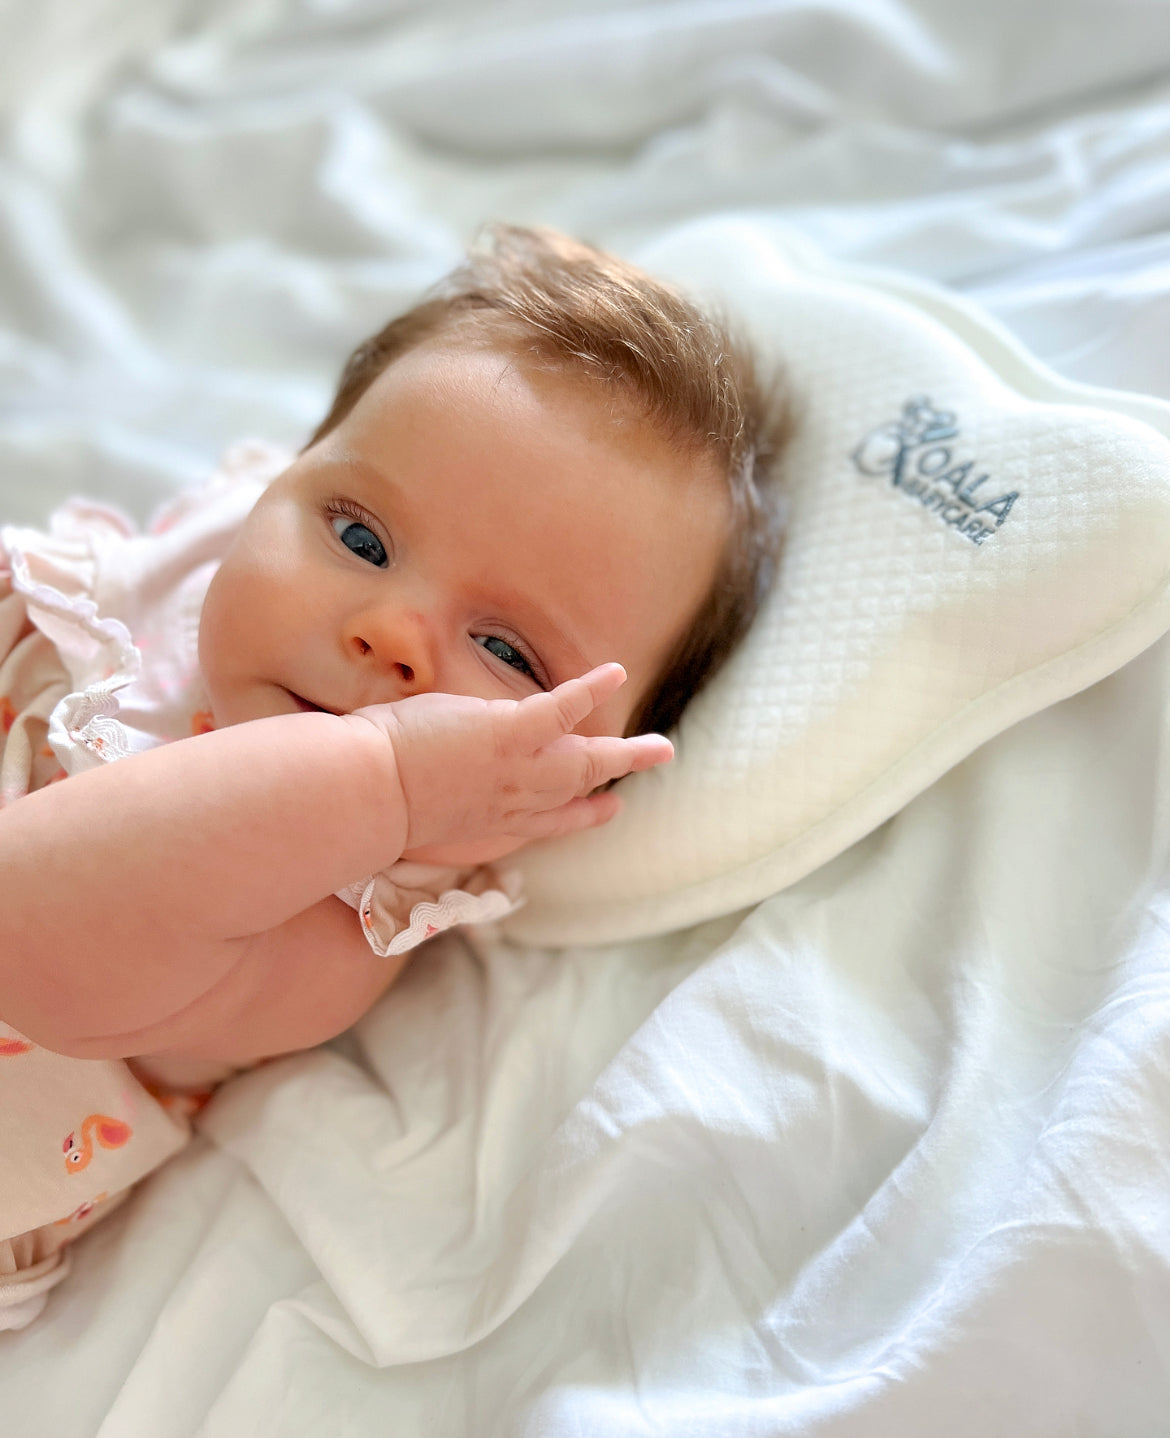 Qué son los bebés reborn y para qué sirven?